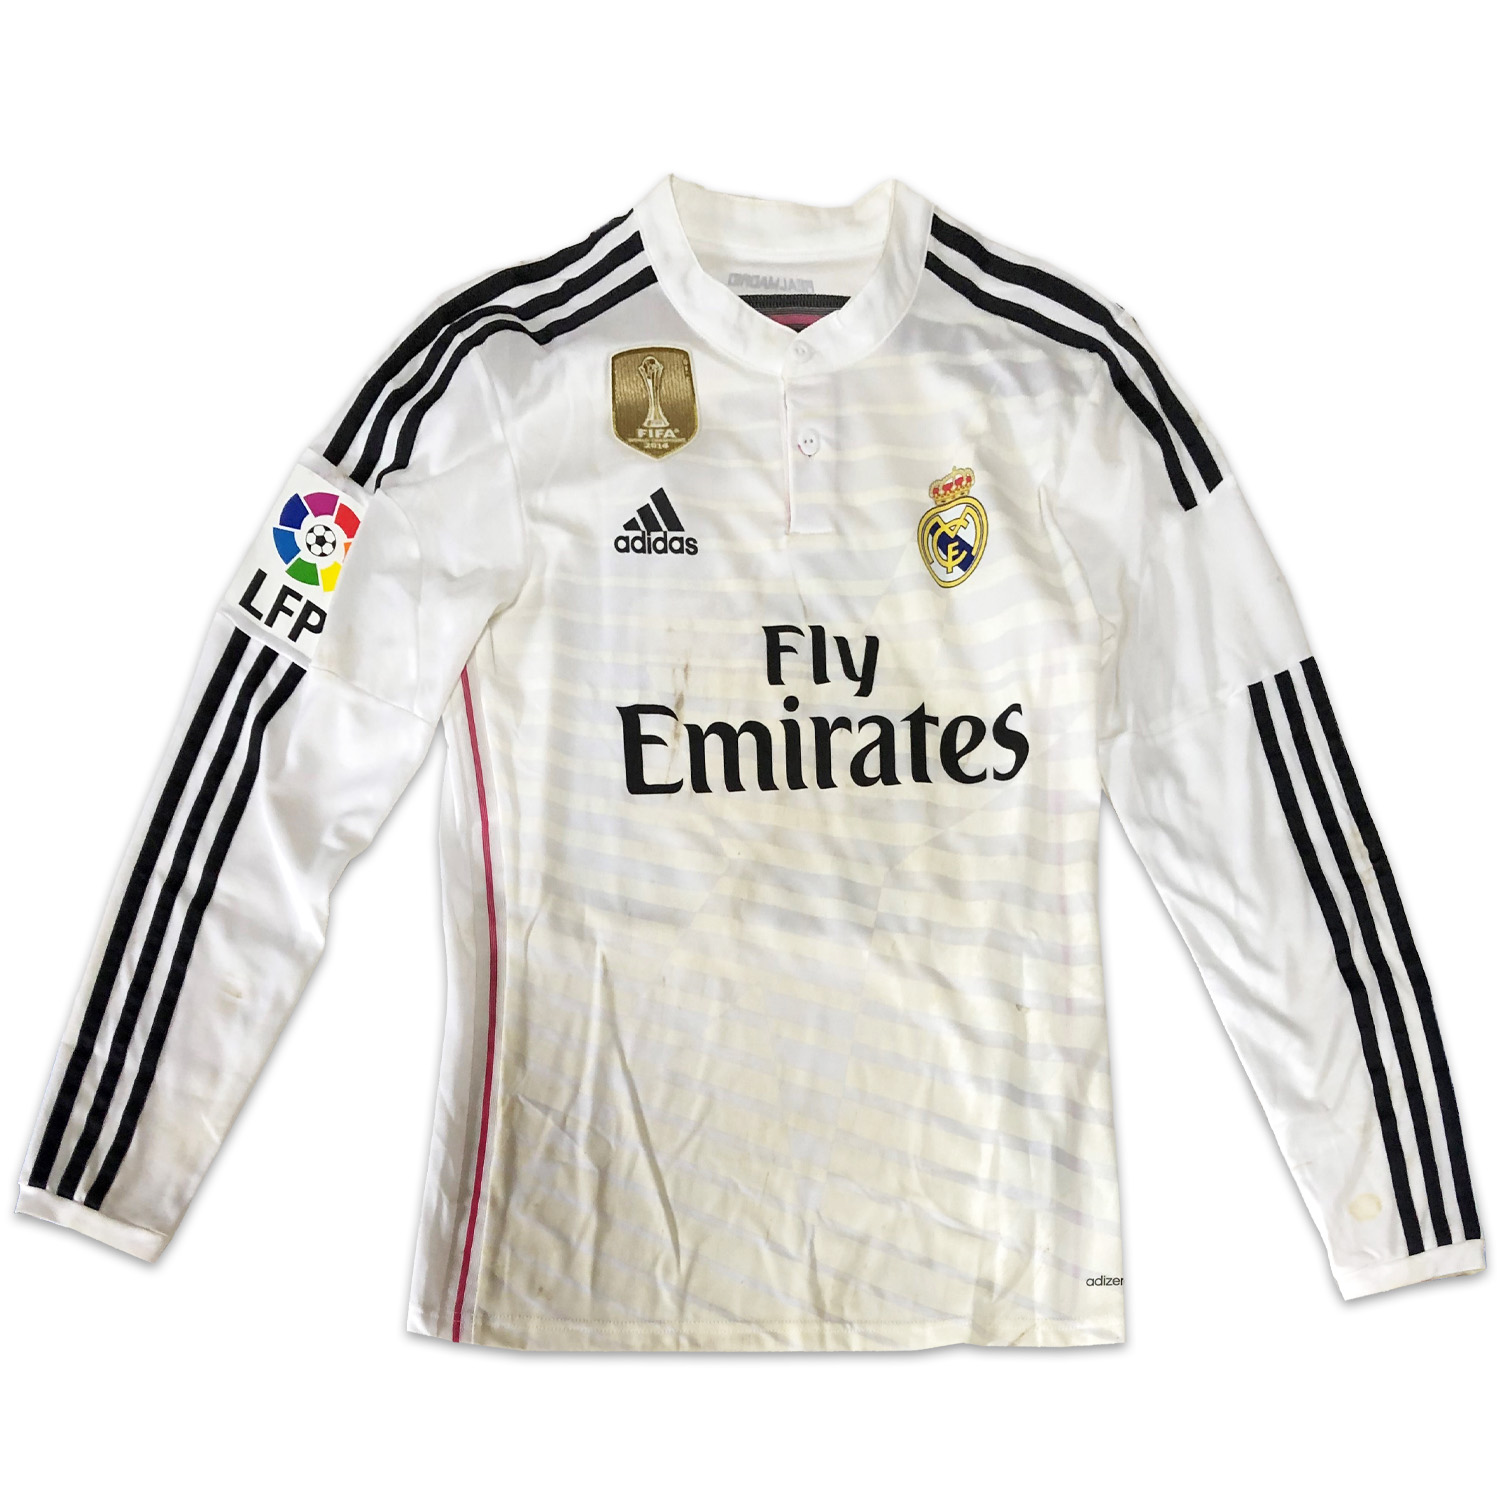 イスコ・アラルコン実使用レアルマドリード14/15ホームユニフォーム THE DUGOUT / Isco Alarcón match worn  14/15 Real Madrid home shirt THE DUGOUT LOA